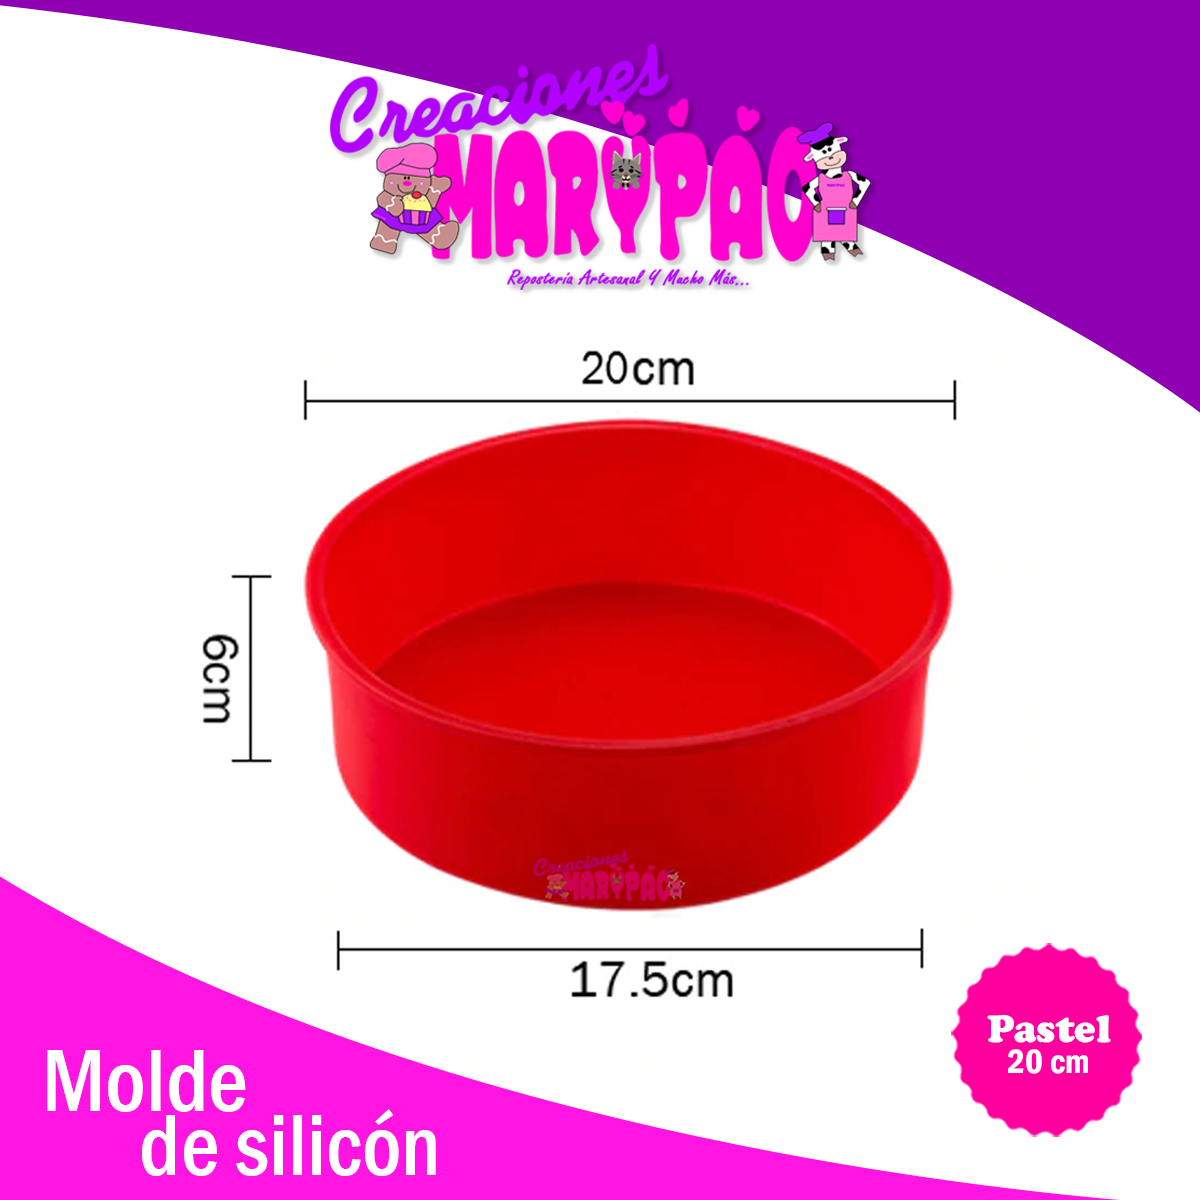 https://creacionesmarypao.com/cdn/shop/products/molde-de-silicon-pastel-20-cm-creaciones-marypao.png?v=1595221566&width=1445